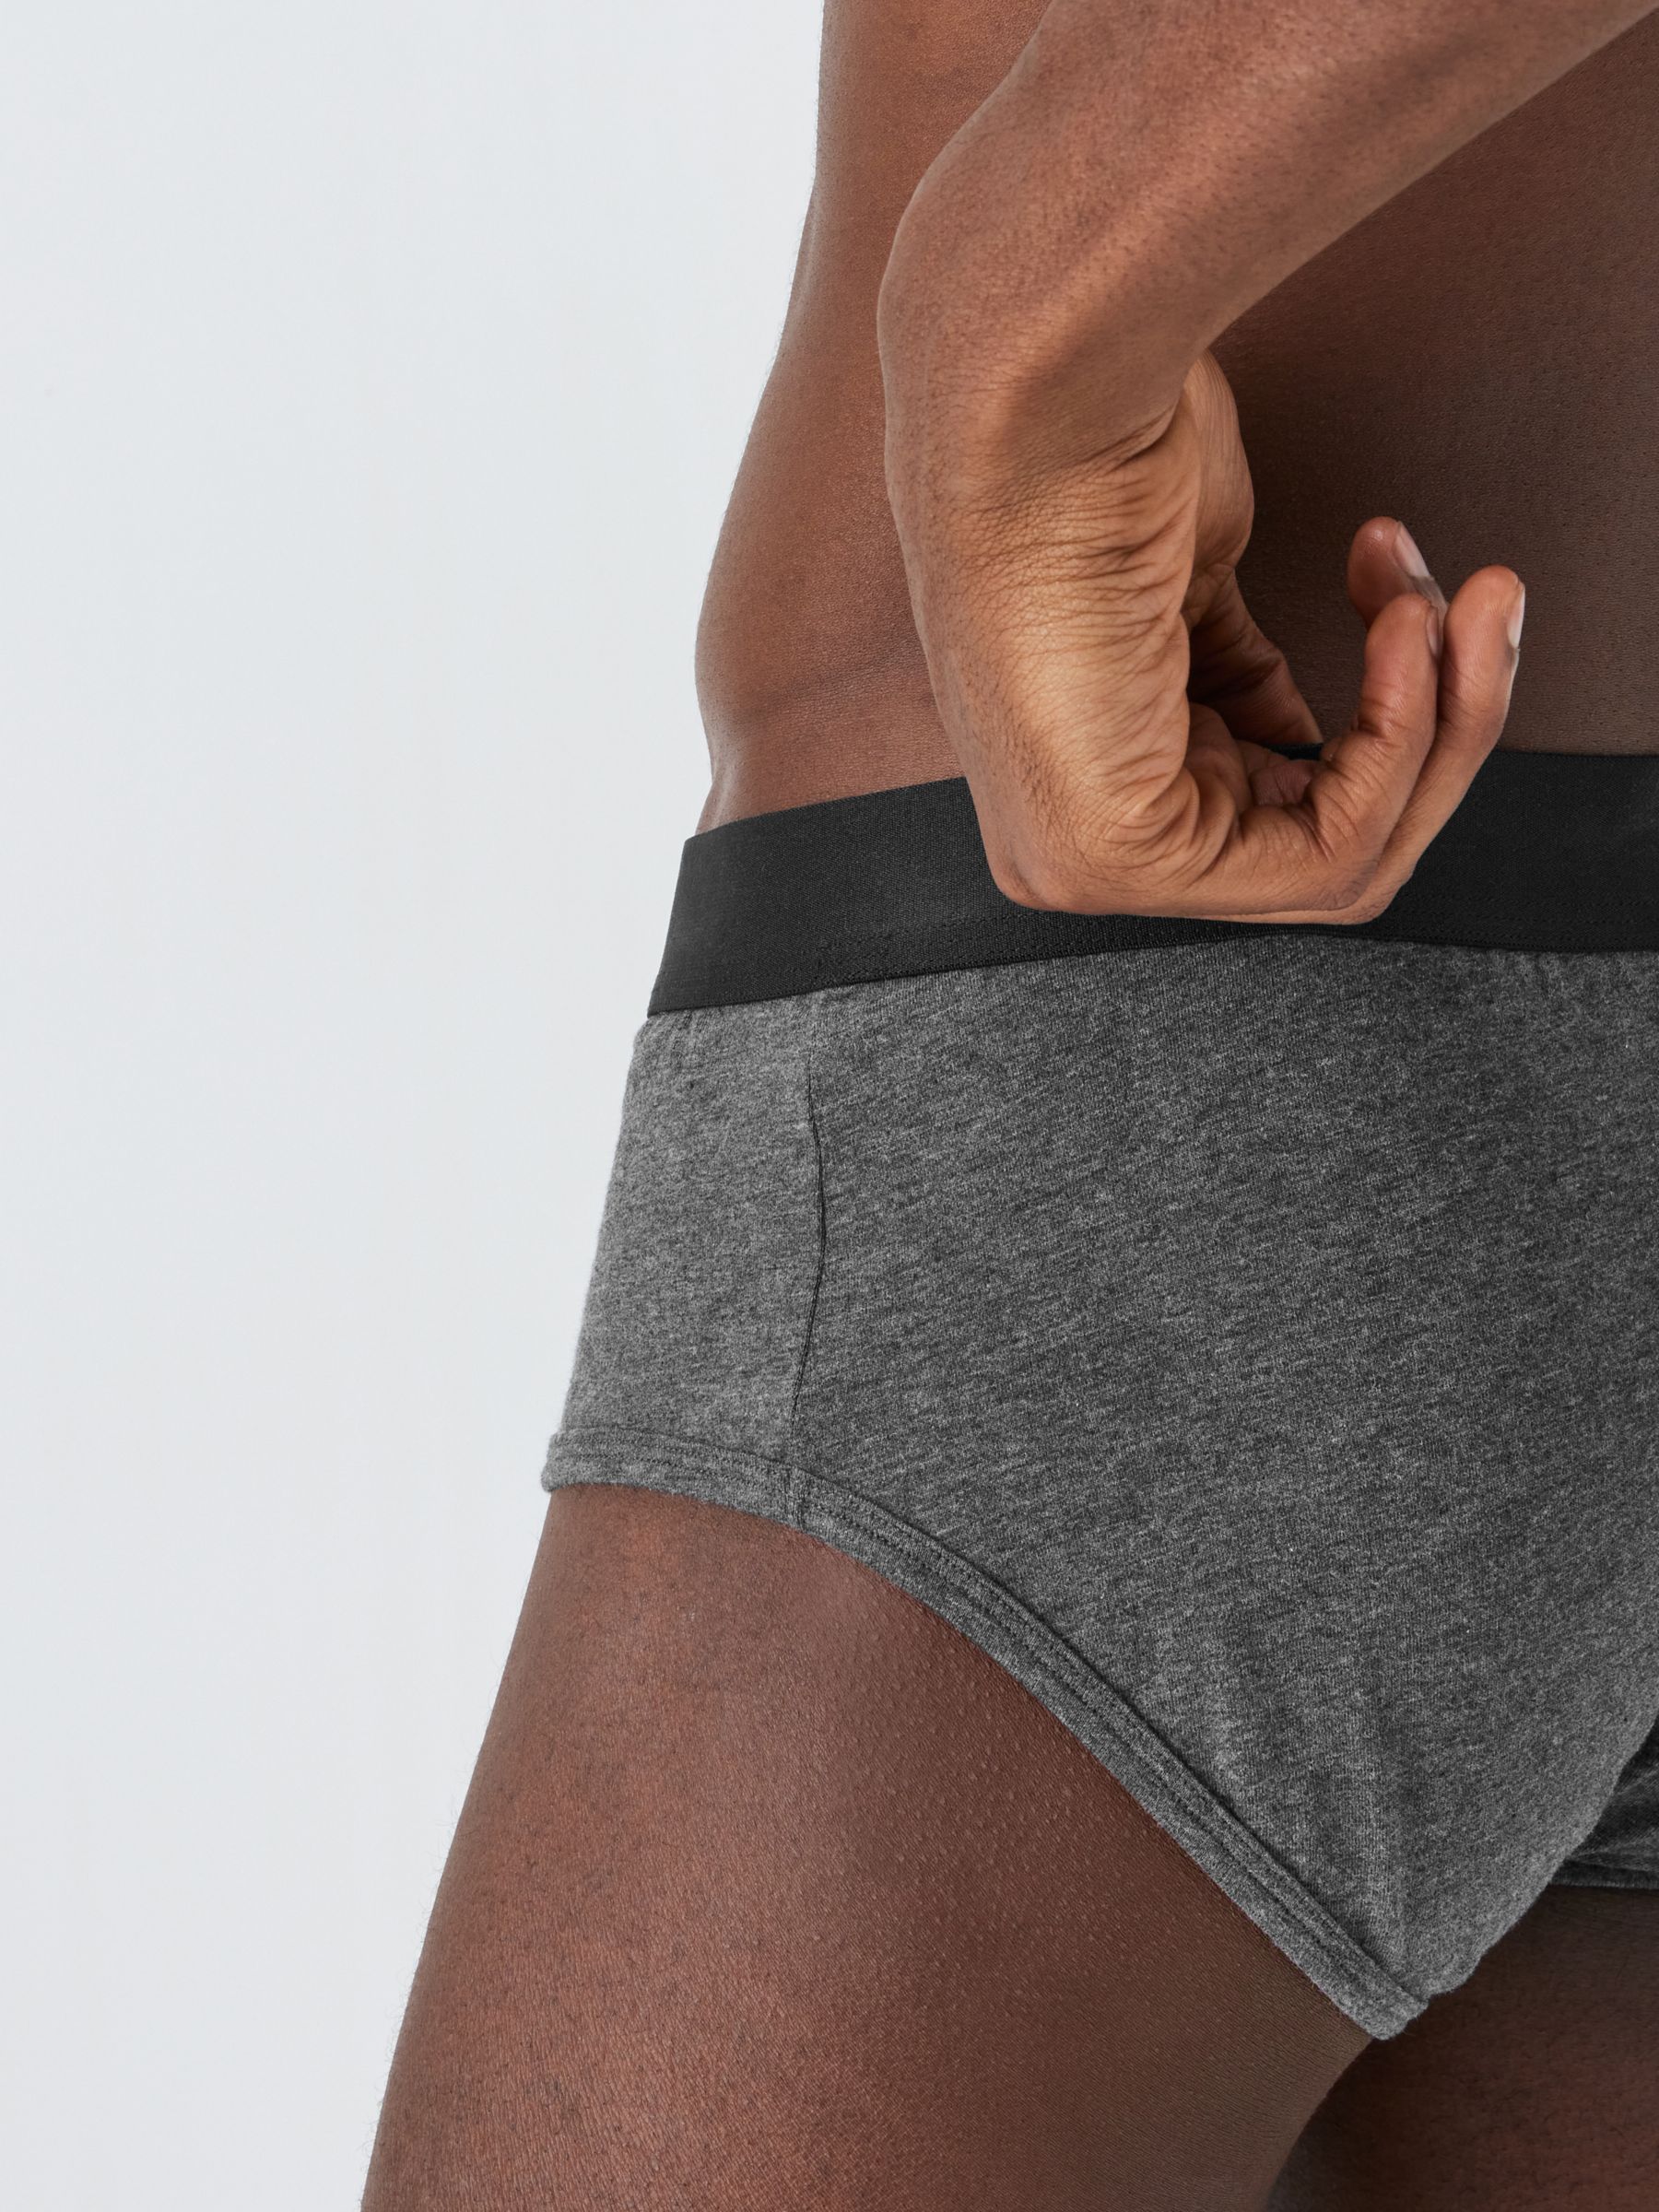 Calvin Klein Matching Underwears for Men - Up to 70% off